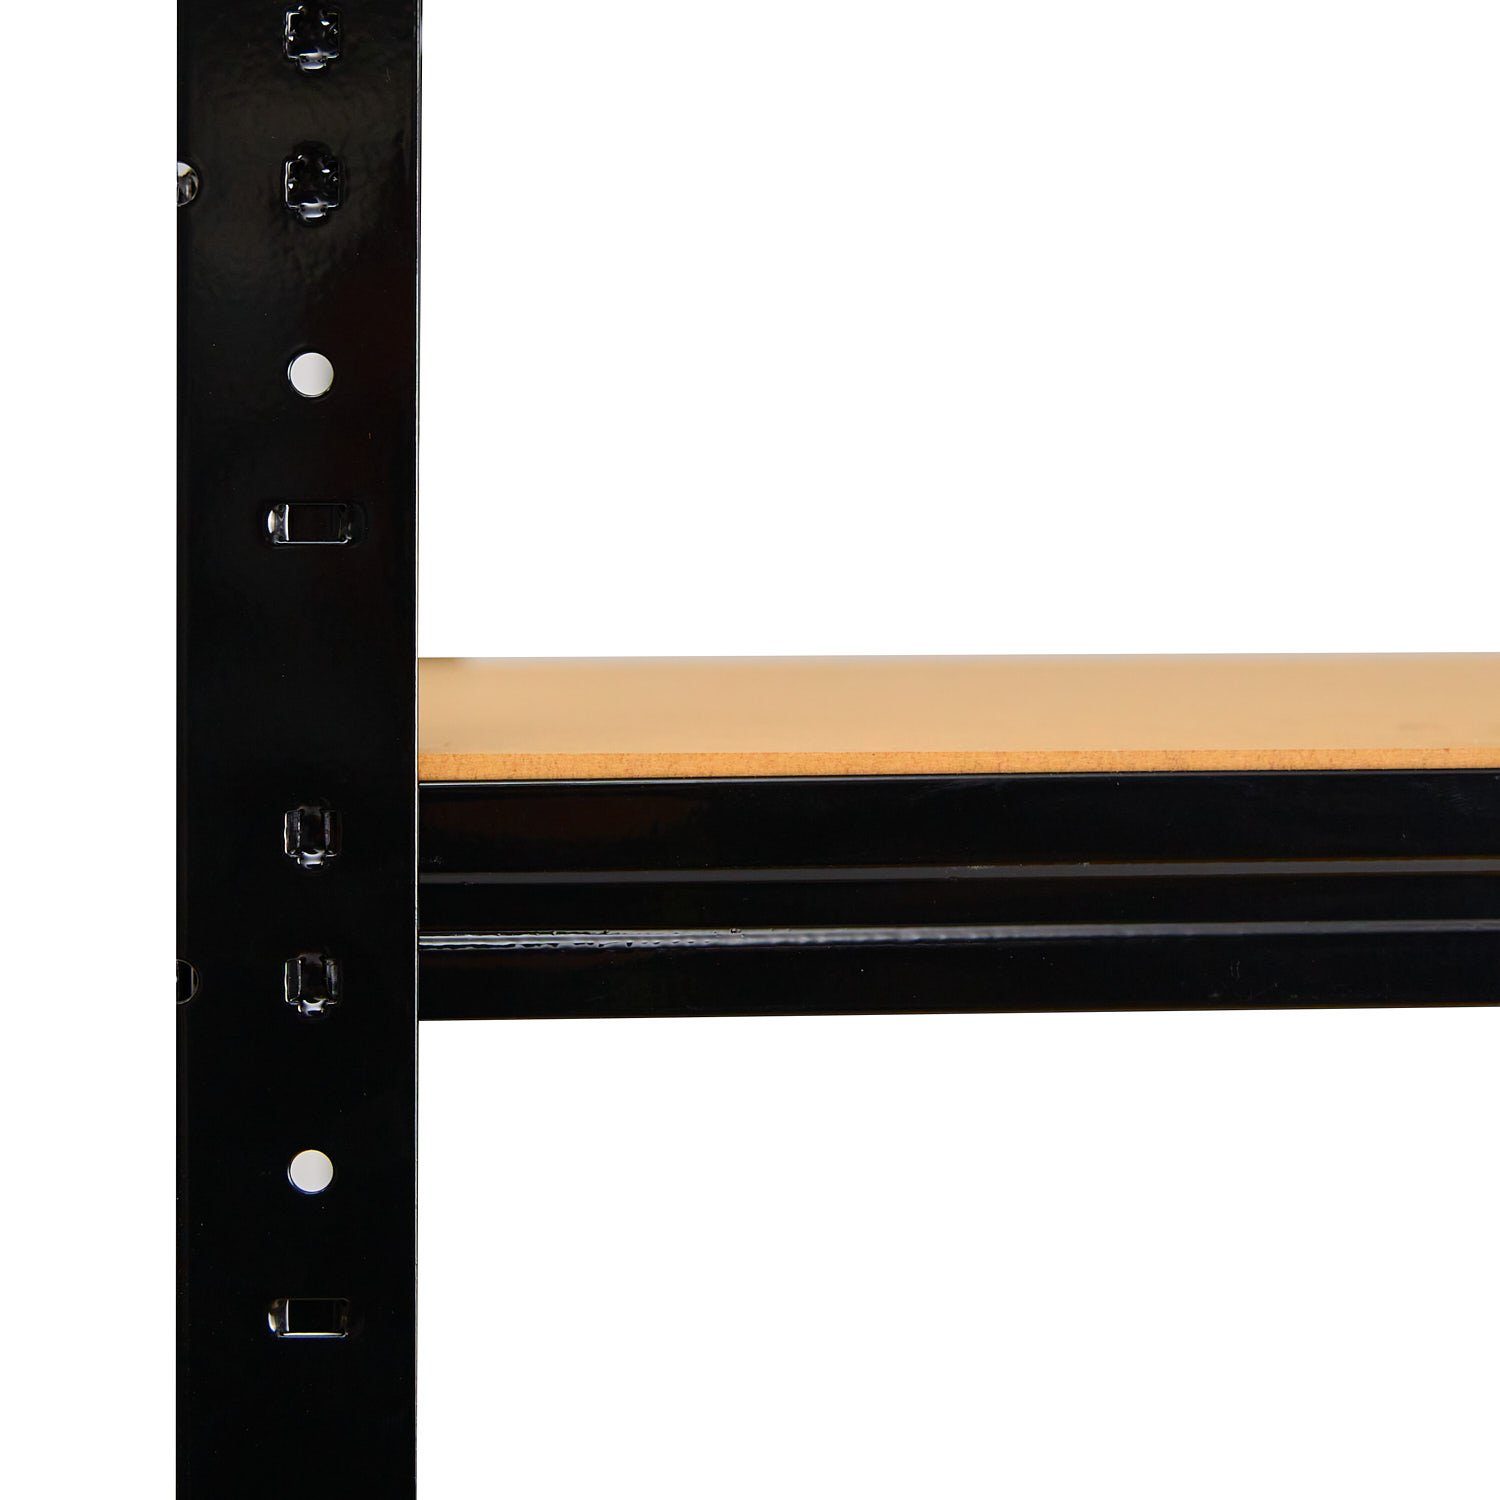 Schwerlastregale shelfplaza für für Fachböden HDF-Fachboden, Schwerlastregal 110x40 cm Komplettes Fachboden-Set BLACK, Steckregale in schwarz, zusätzliche